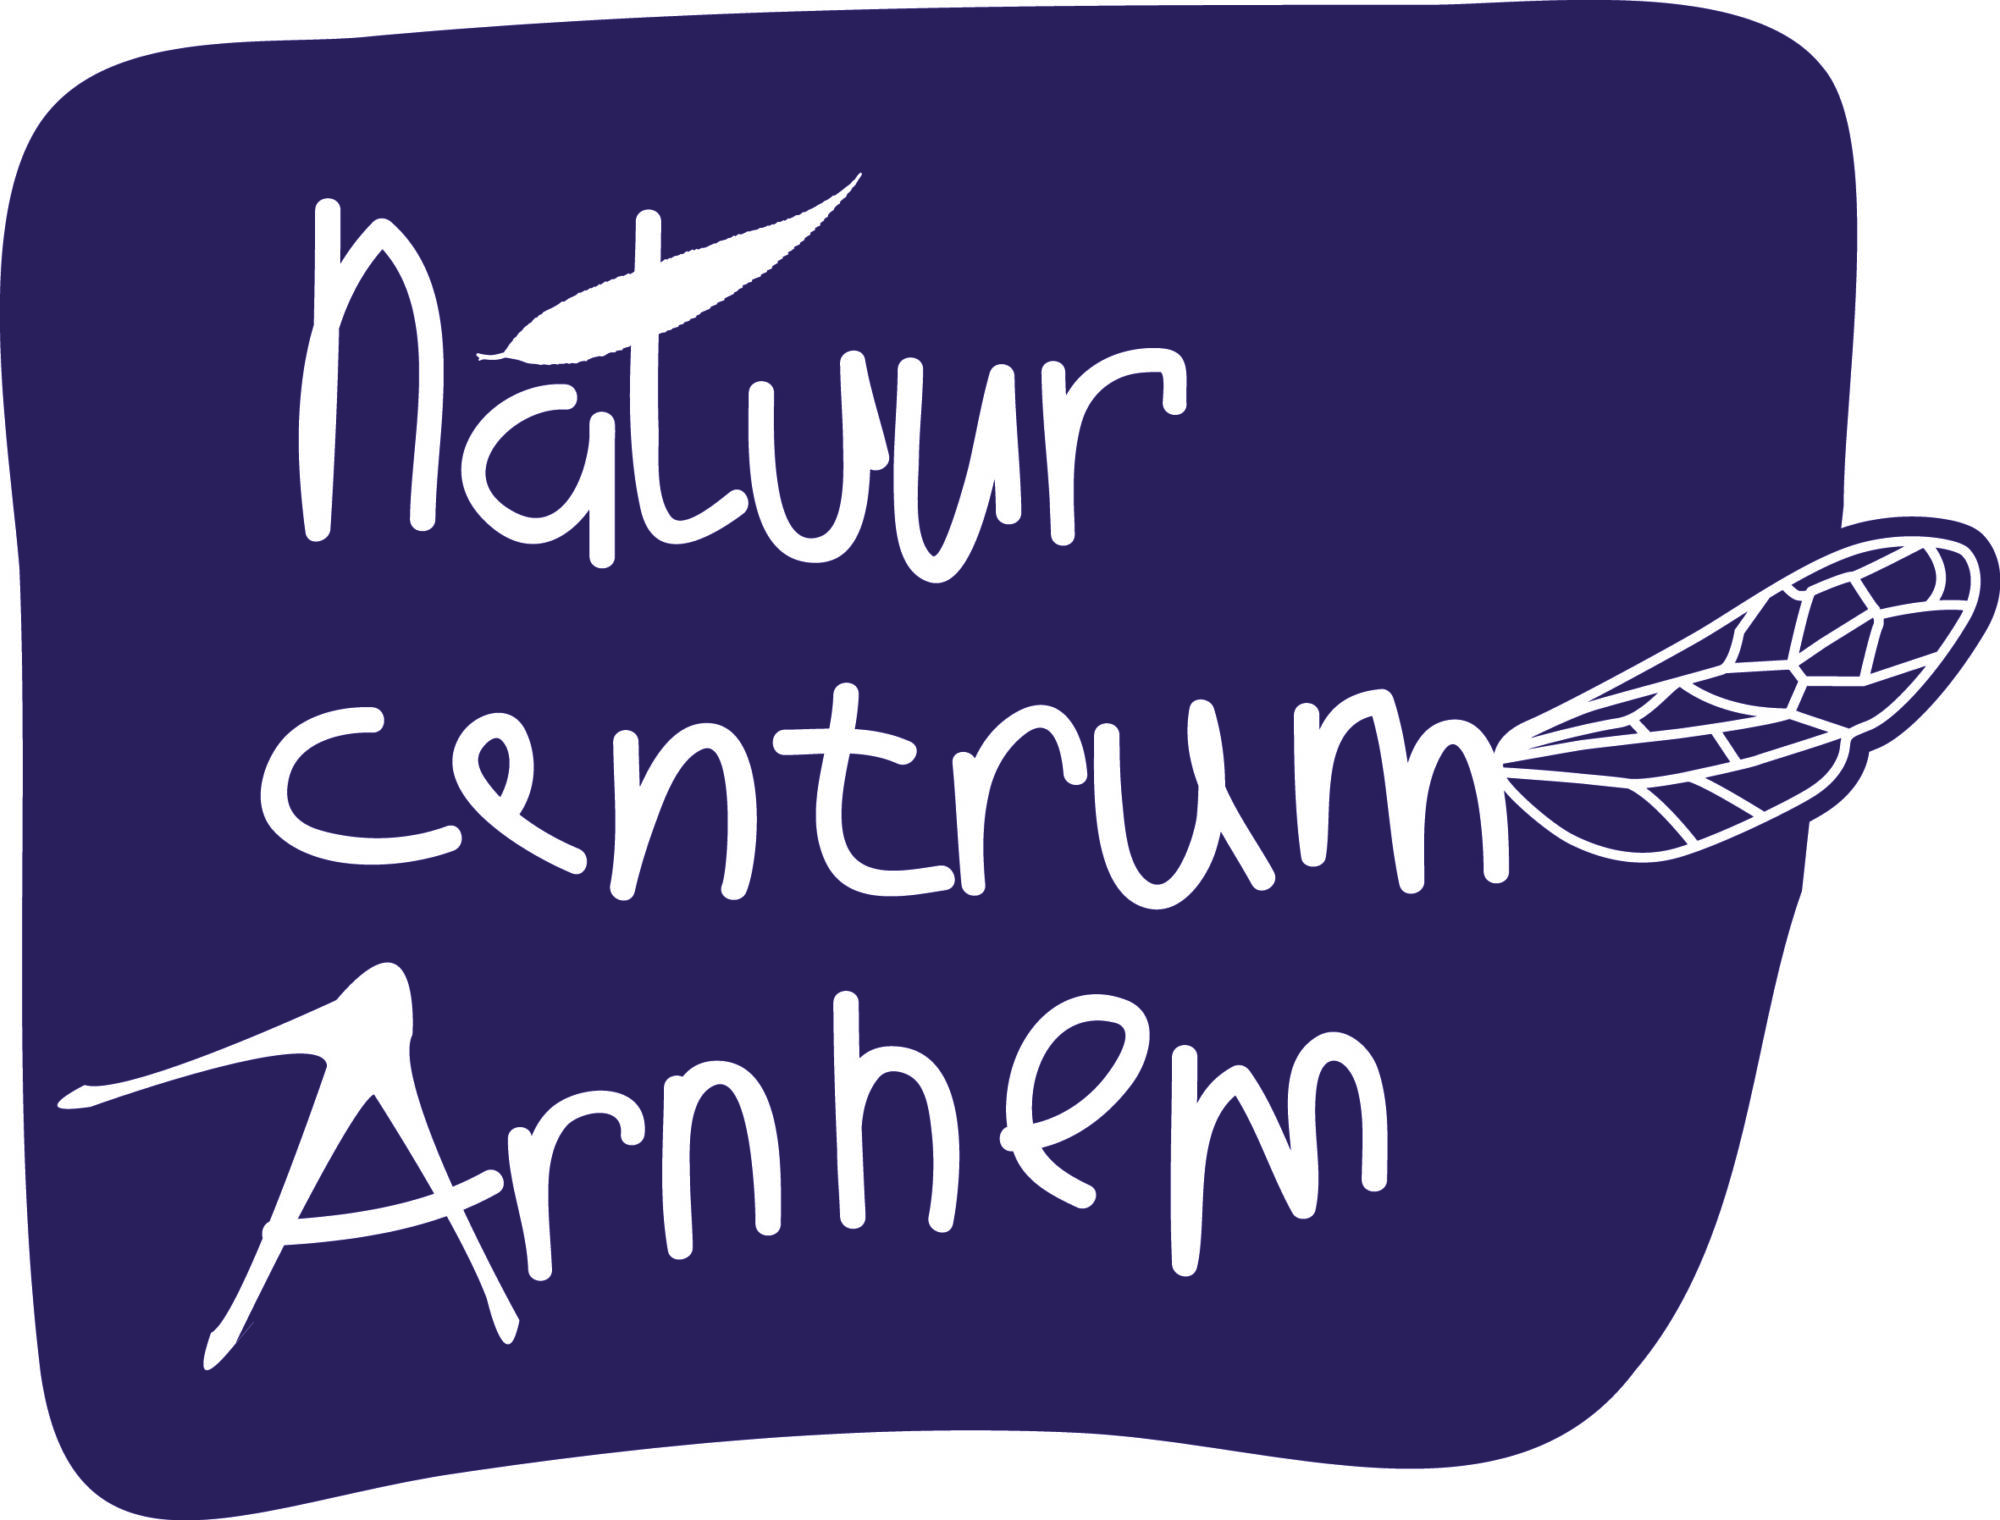 Natuurcentrum Arnhem